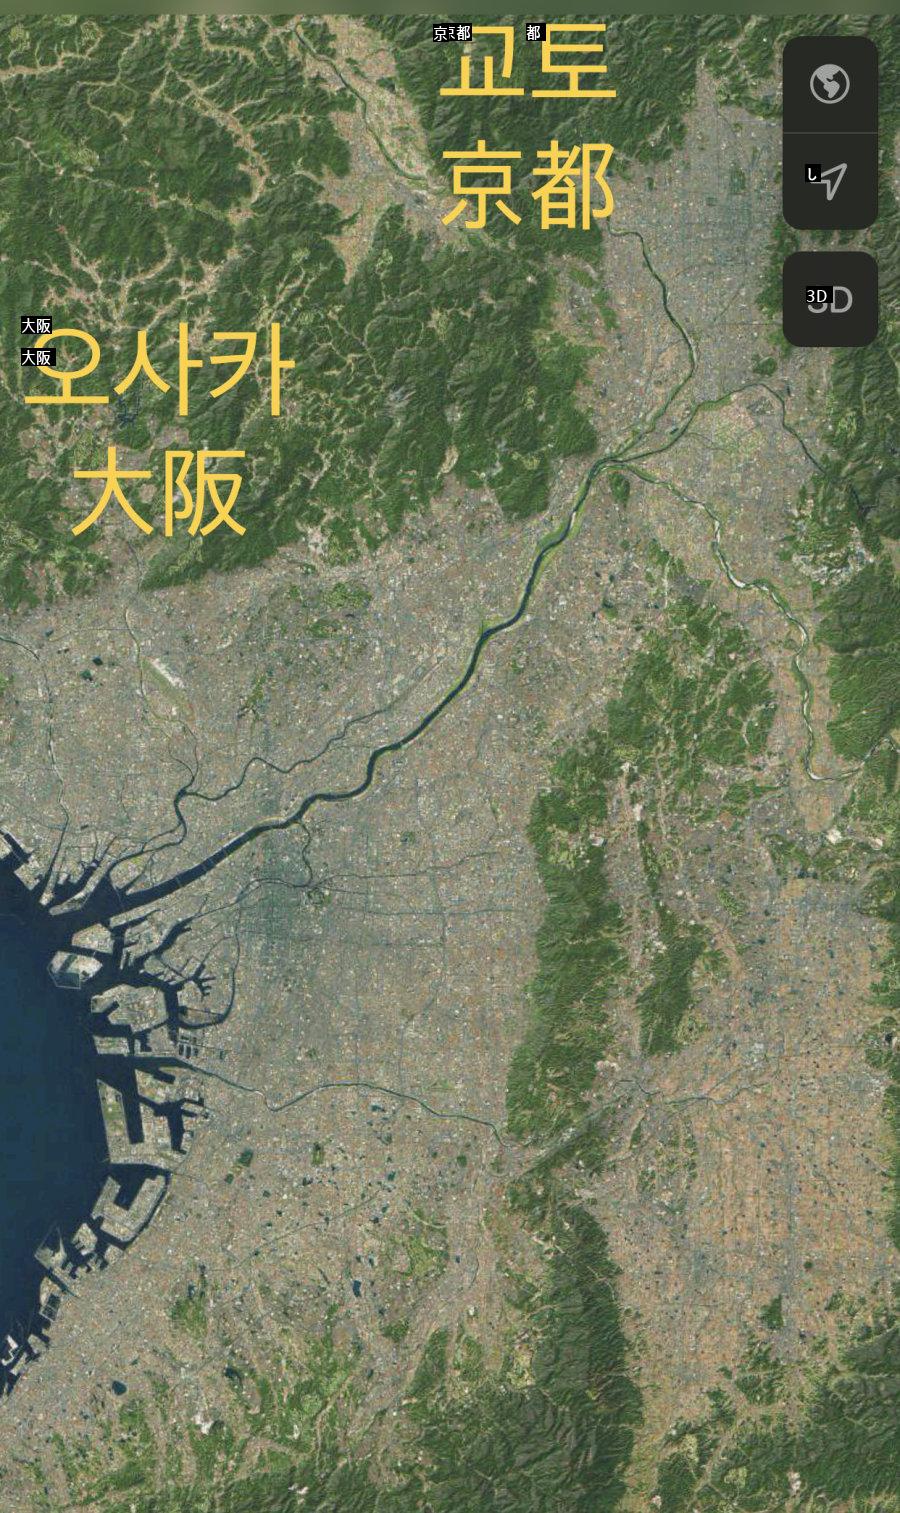 韓国の都市 VS 日本の都市地形比較 ぶるぶるjpg